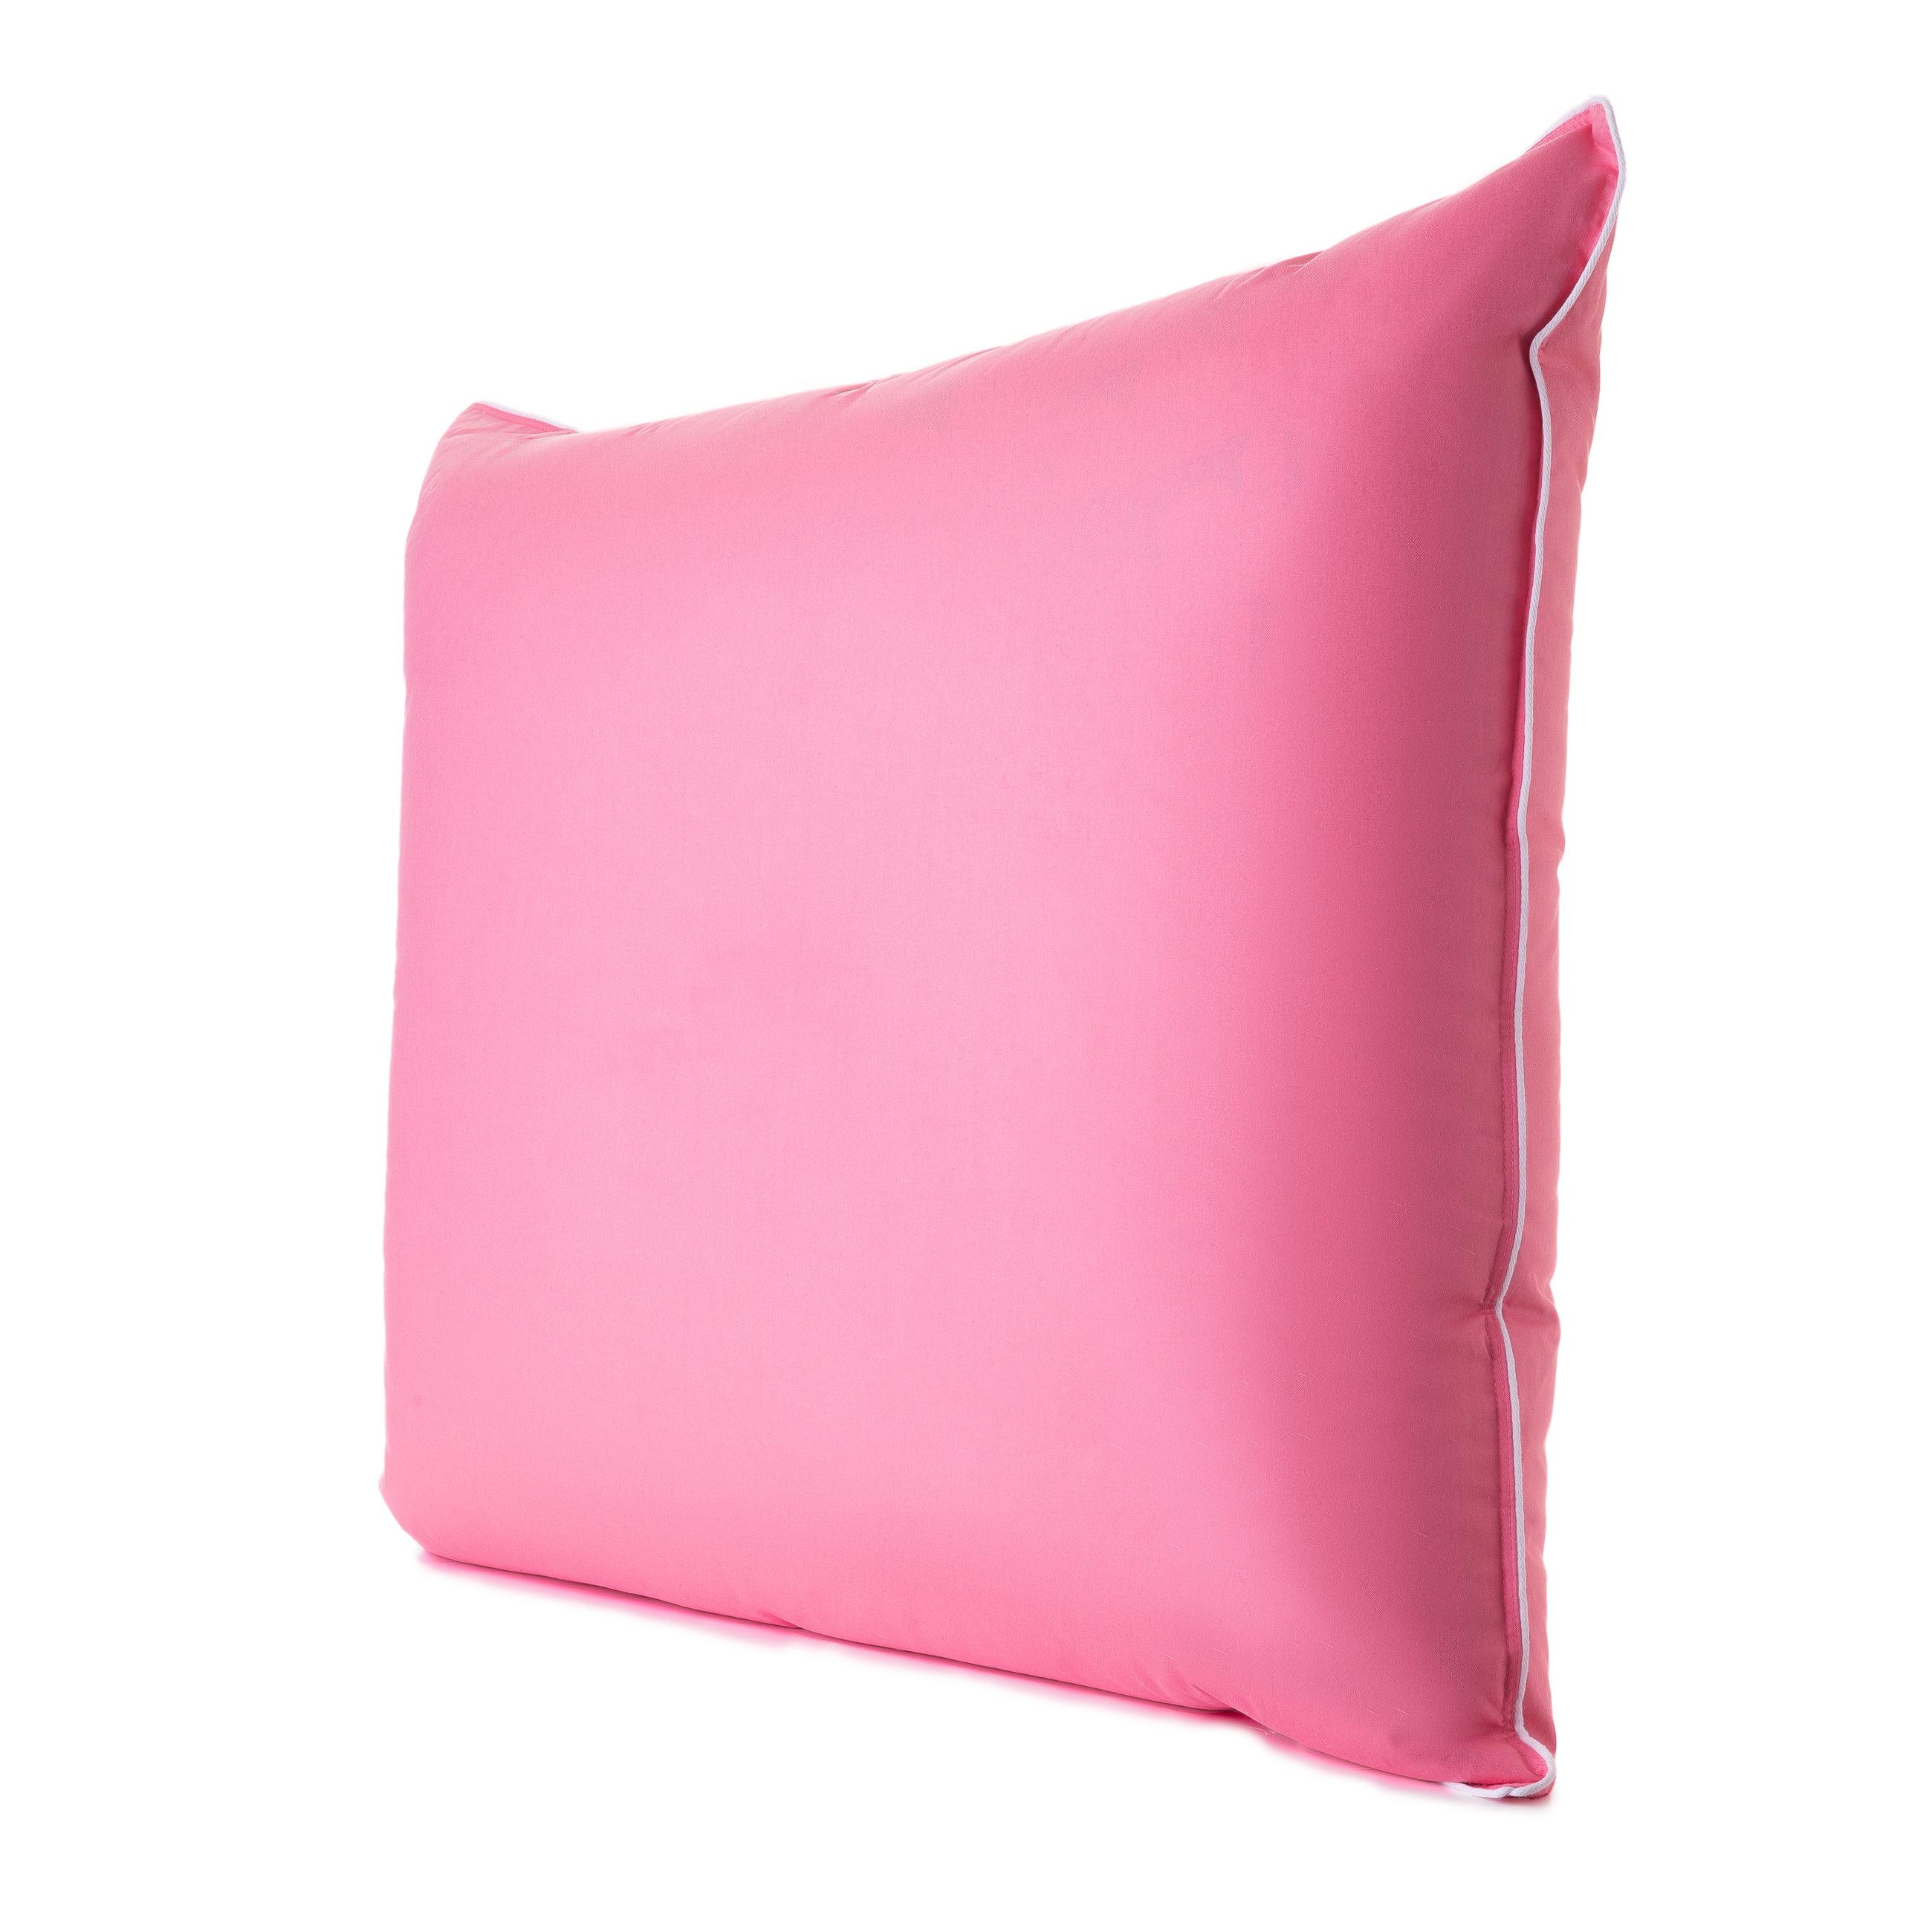 Zdjęcie typu packshot różowej poduszki puchowej